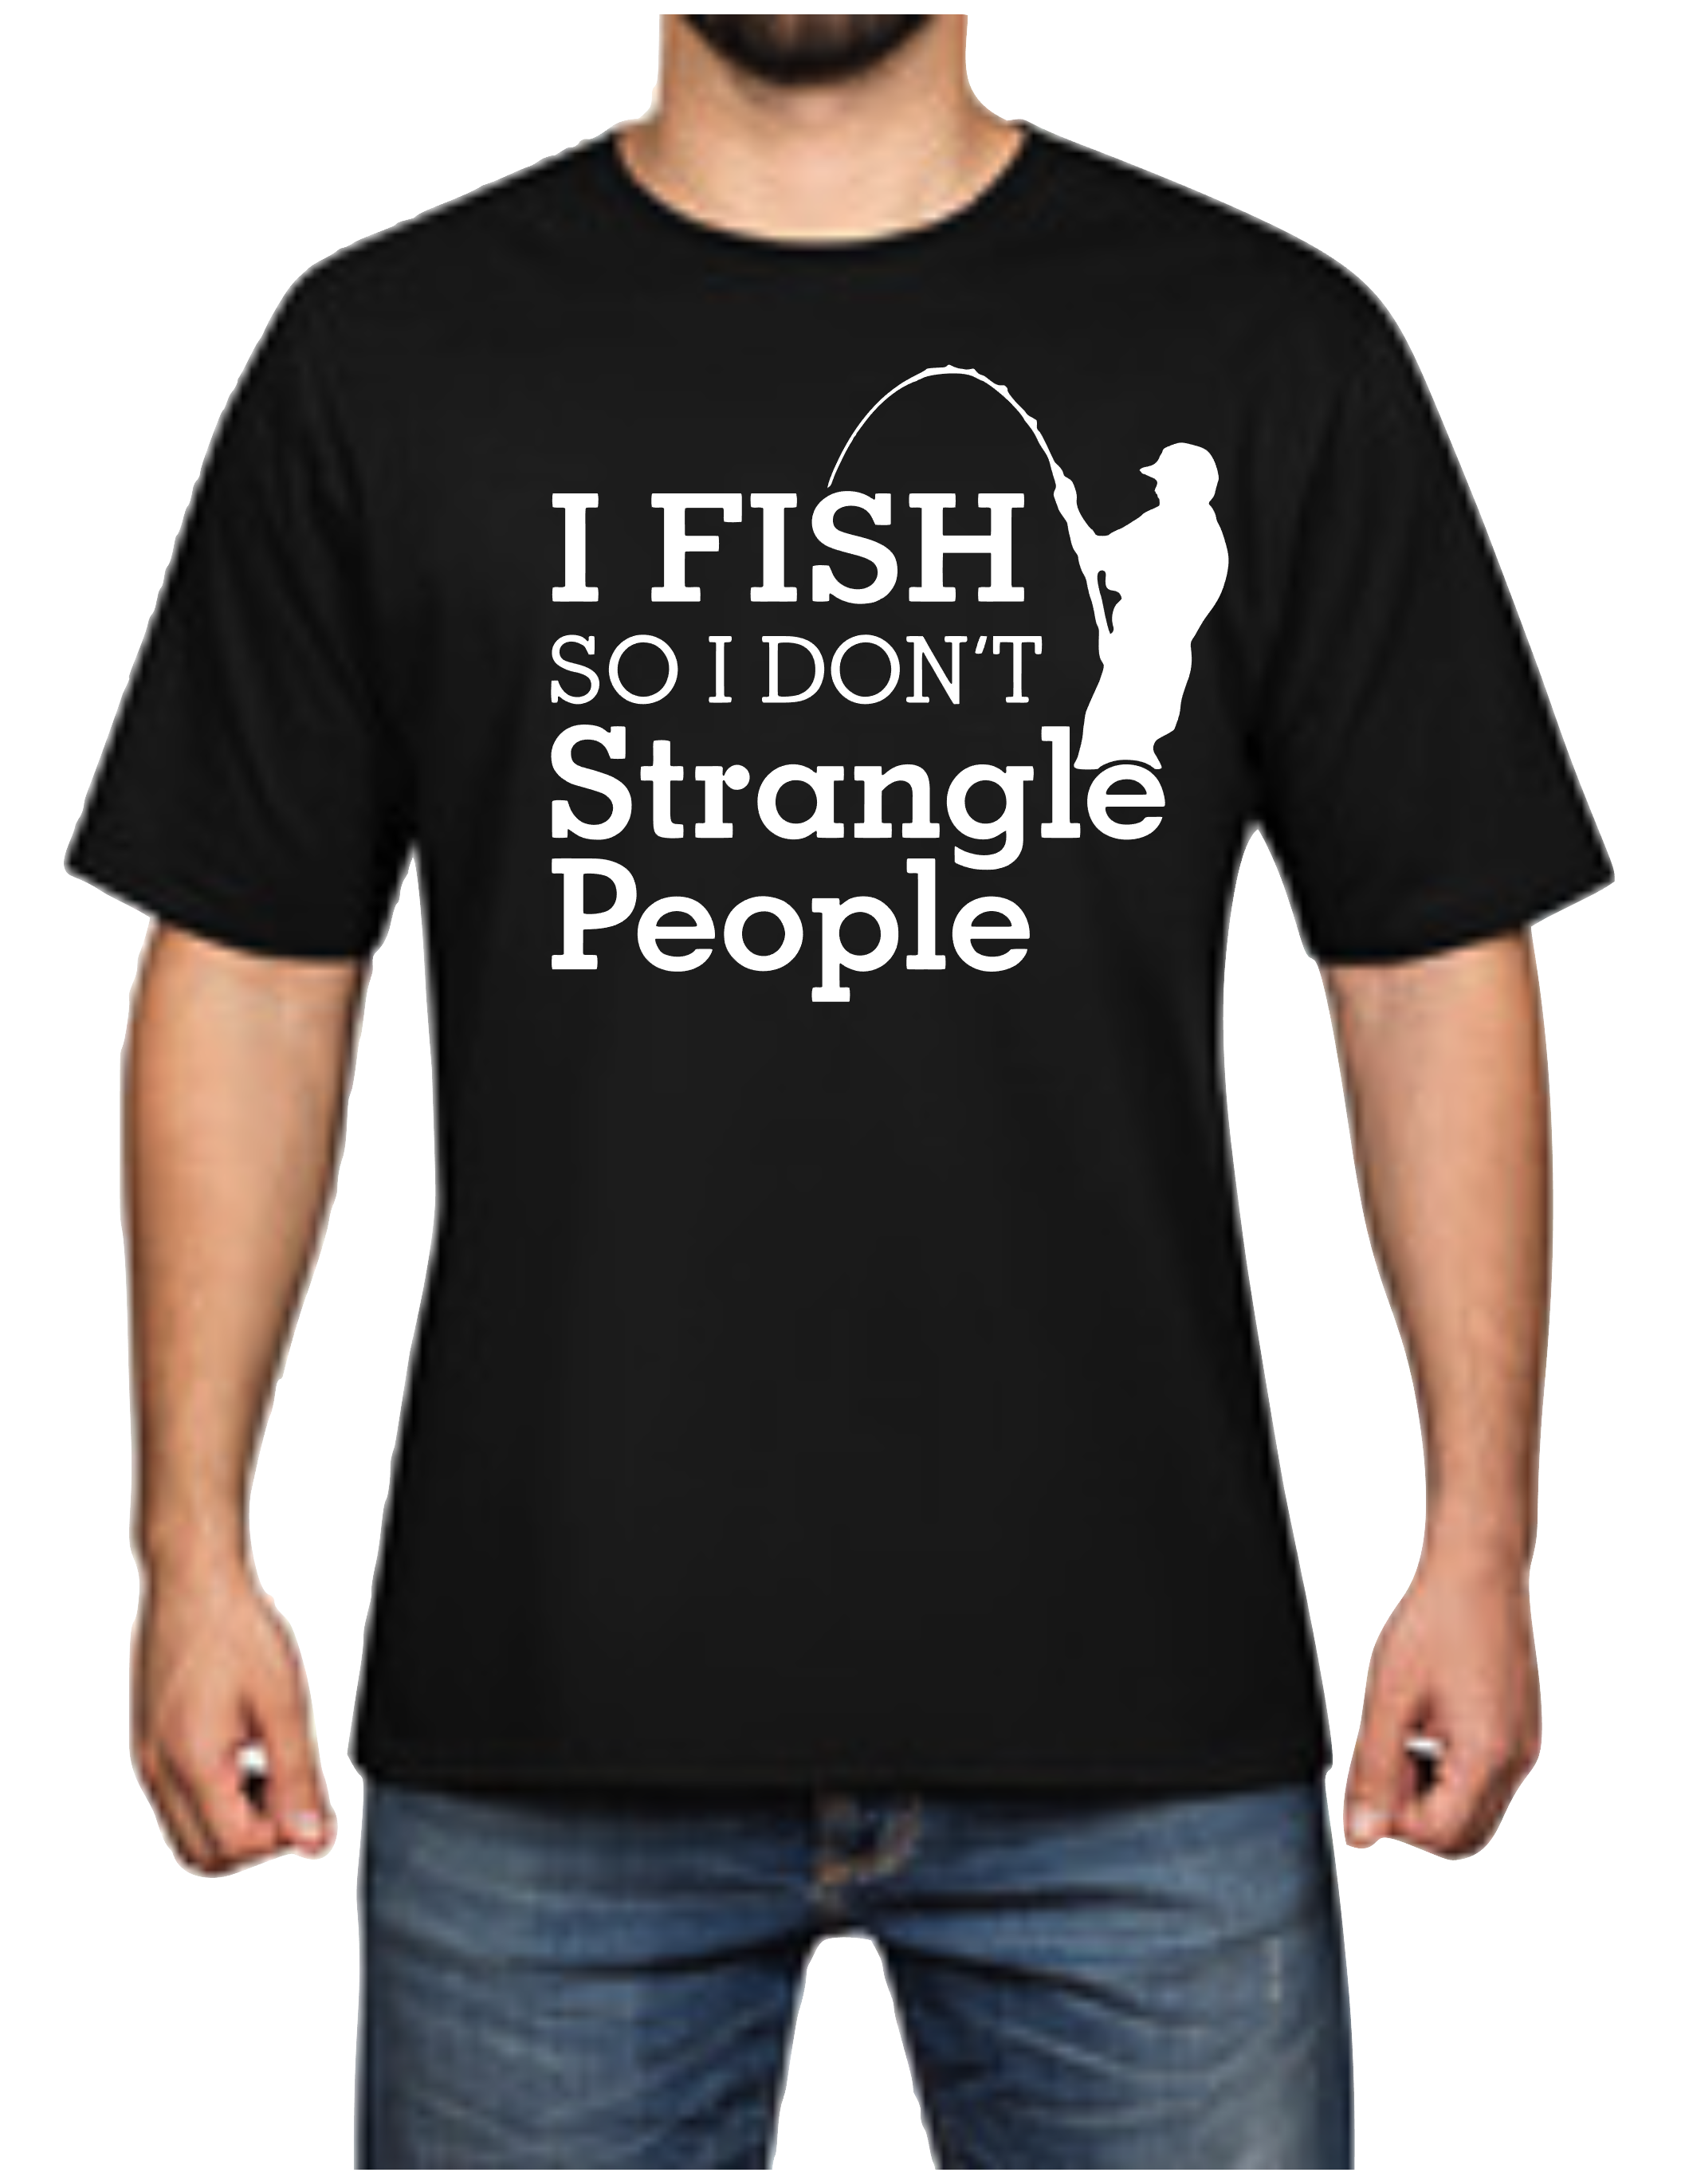 I Fish So I Don't Strangle People Man